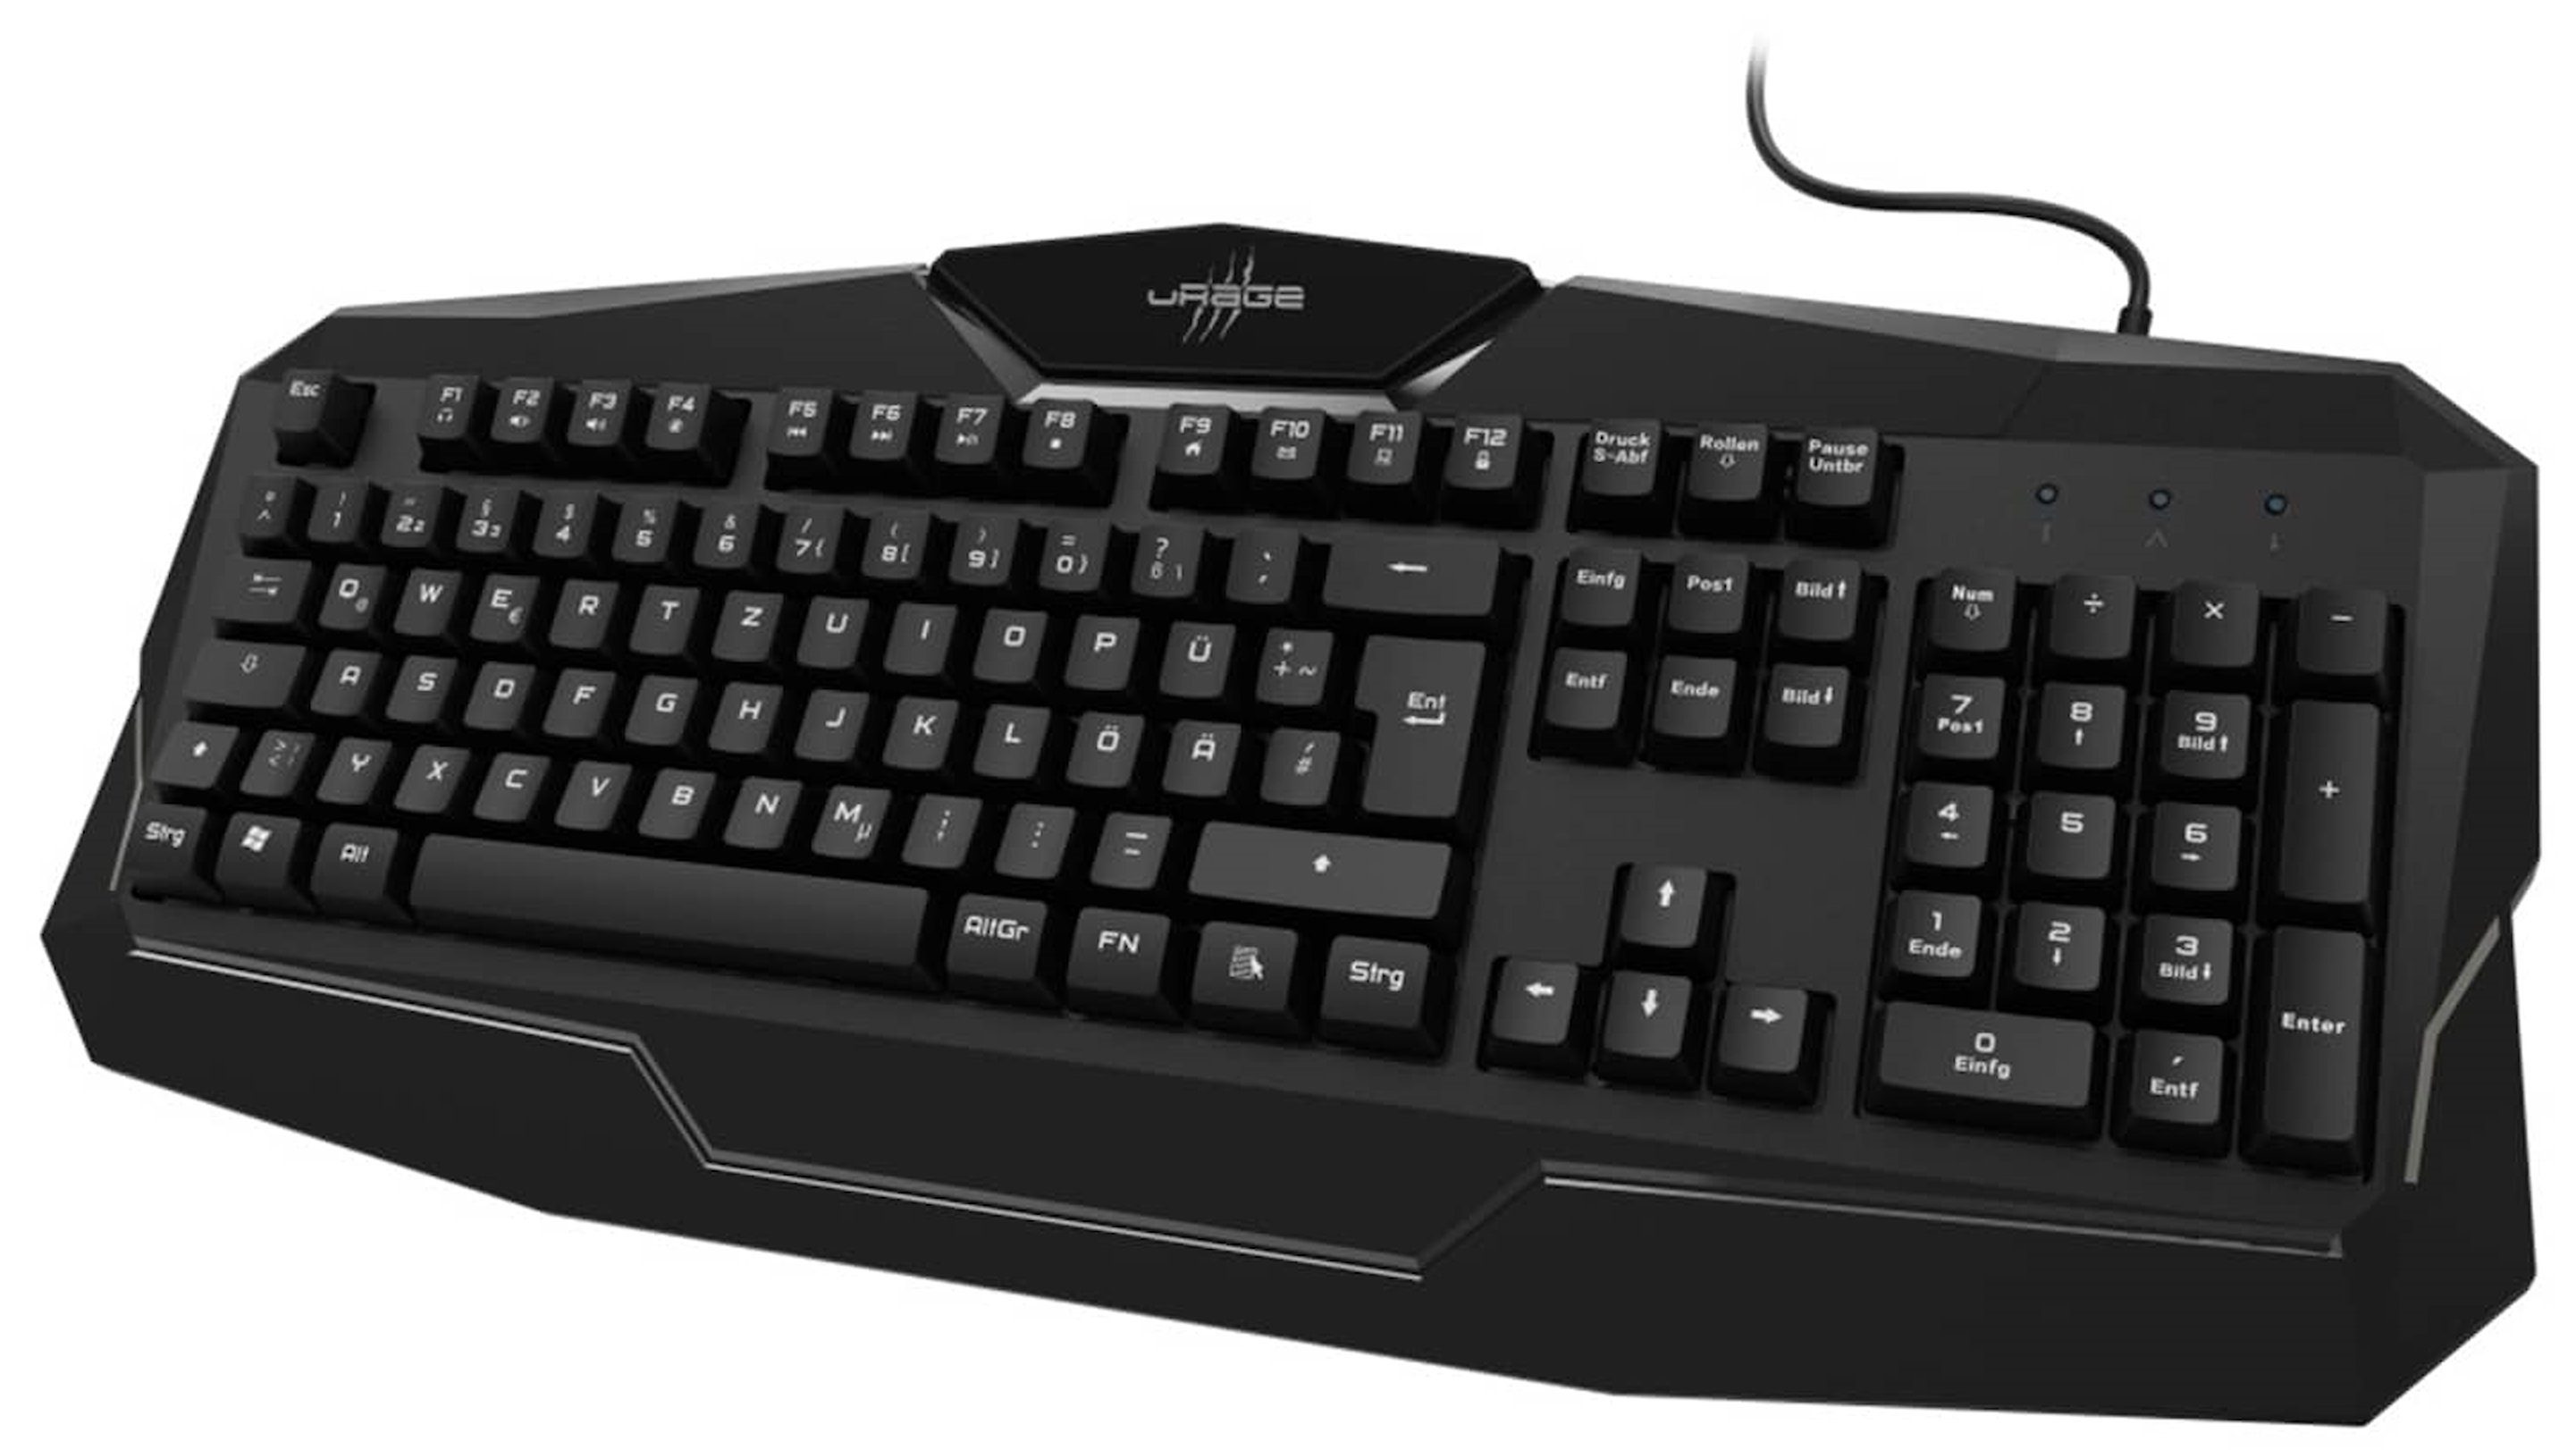 uRage USB Gaming-Keyboard Exodus 100 mit Anti-Ghosting Gaming-Tastatur (mit Multimedia-Funktionen und ergonomischer Handballenauflage)